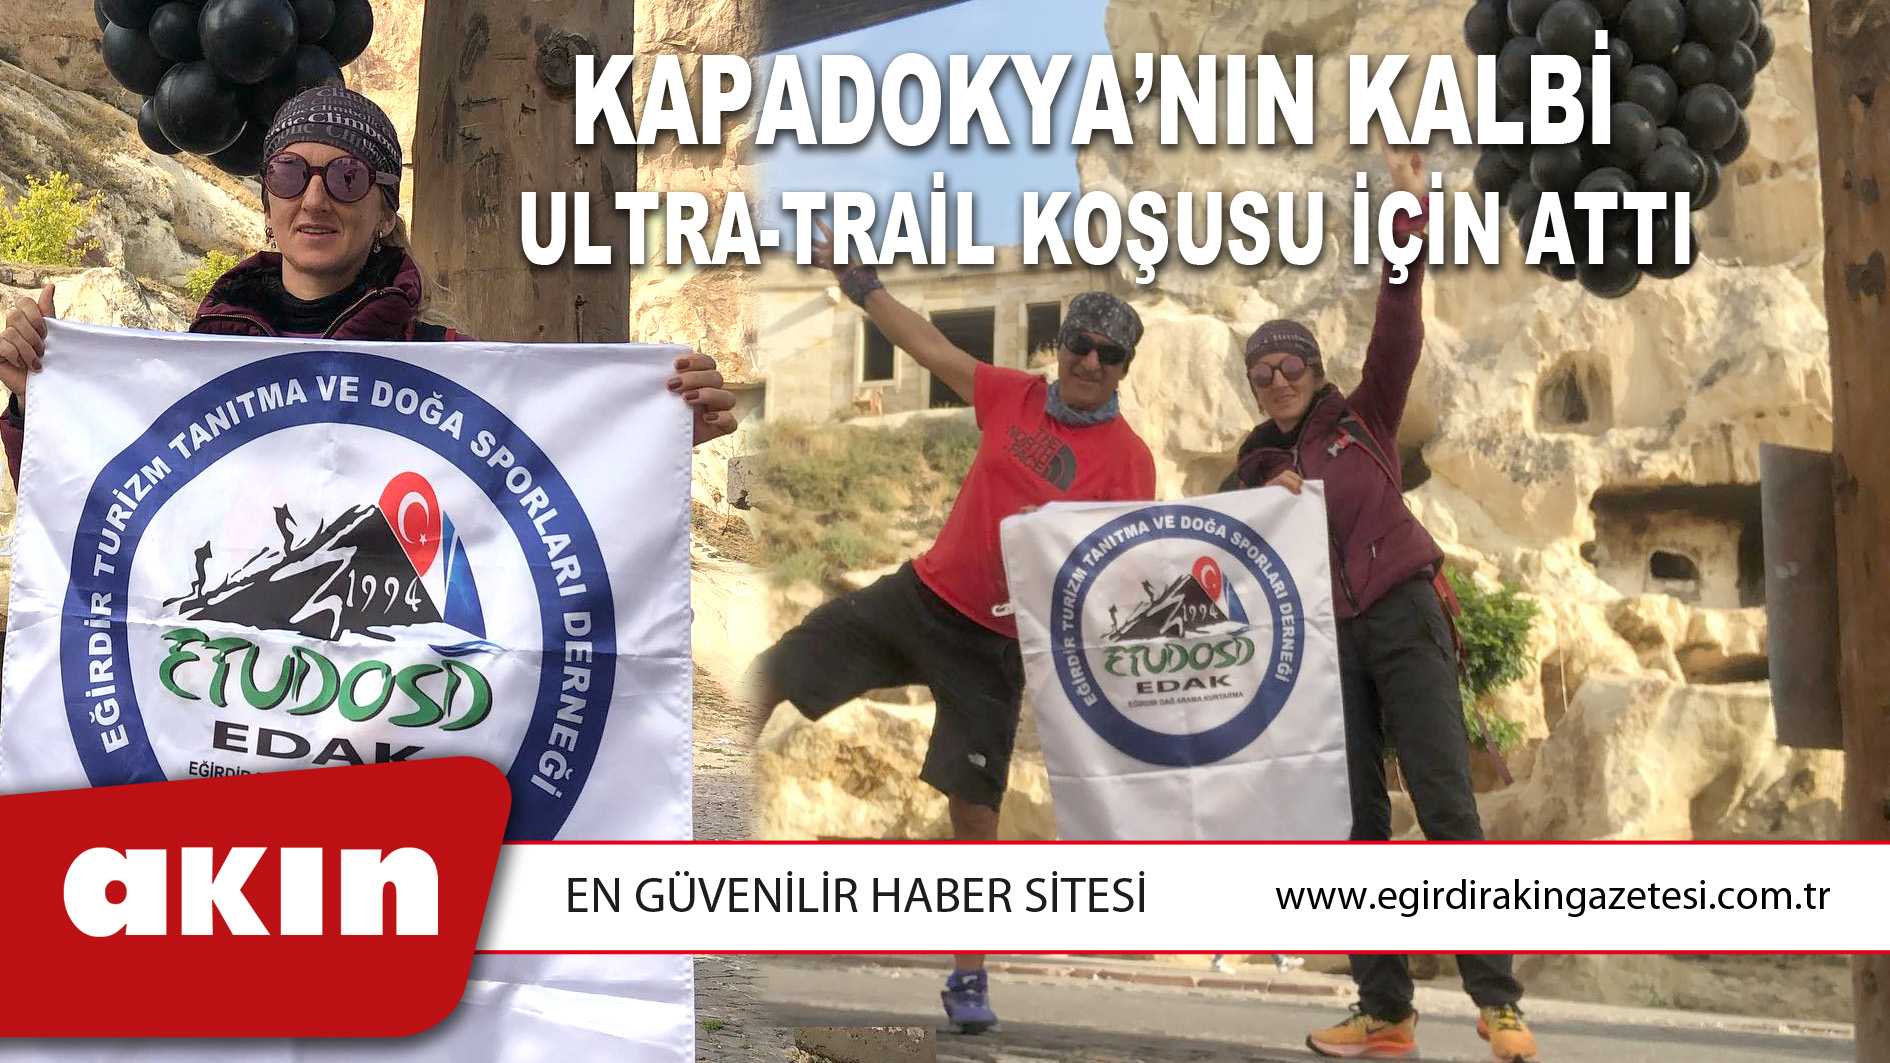 ETUDOSD sporcusu Nurşen Akyazı, Kadınlar kategorisinde 63 k koşuyu tamamlayarak 26.lık ile yarışı tamamladı.